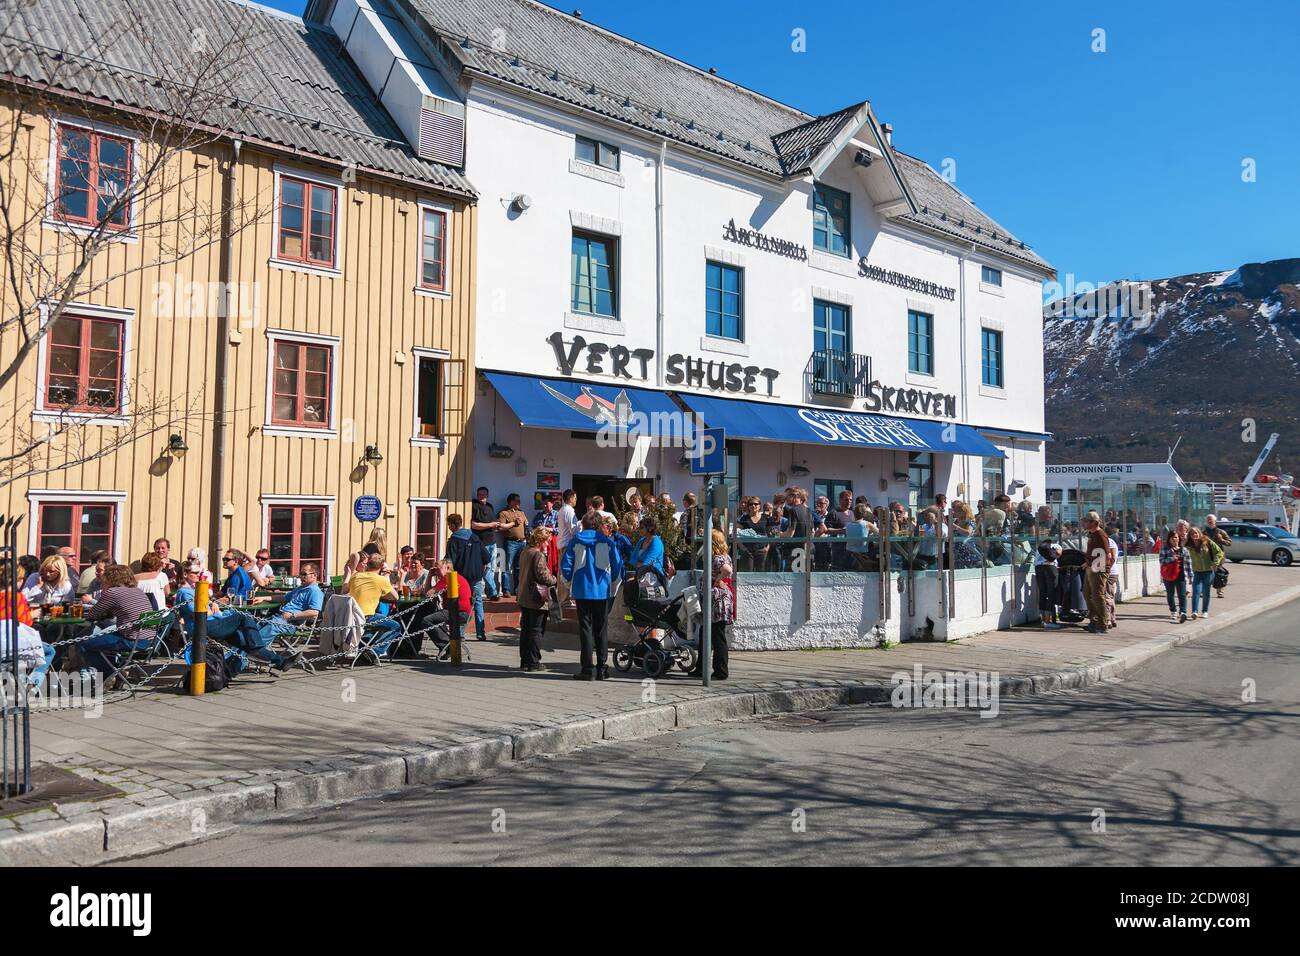 Ancien restaurant Skarven à Tromso, Norvège. Un jour de début de printemps avec de nombreux visiteurs. Banque D'Images